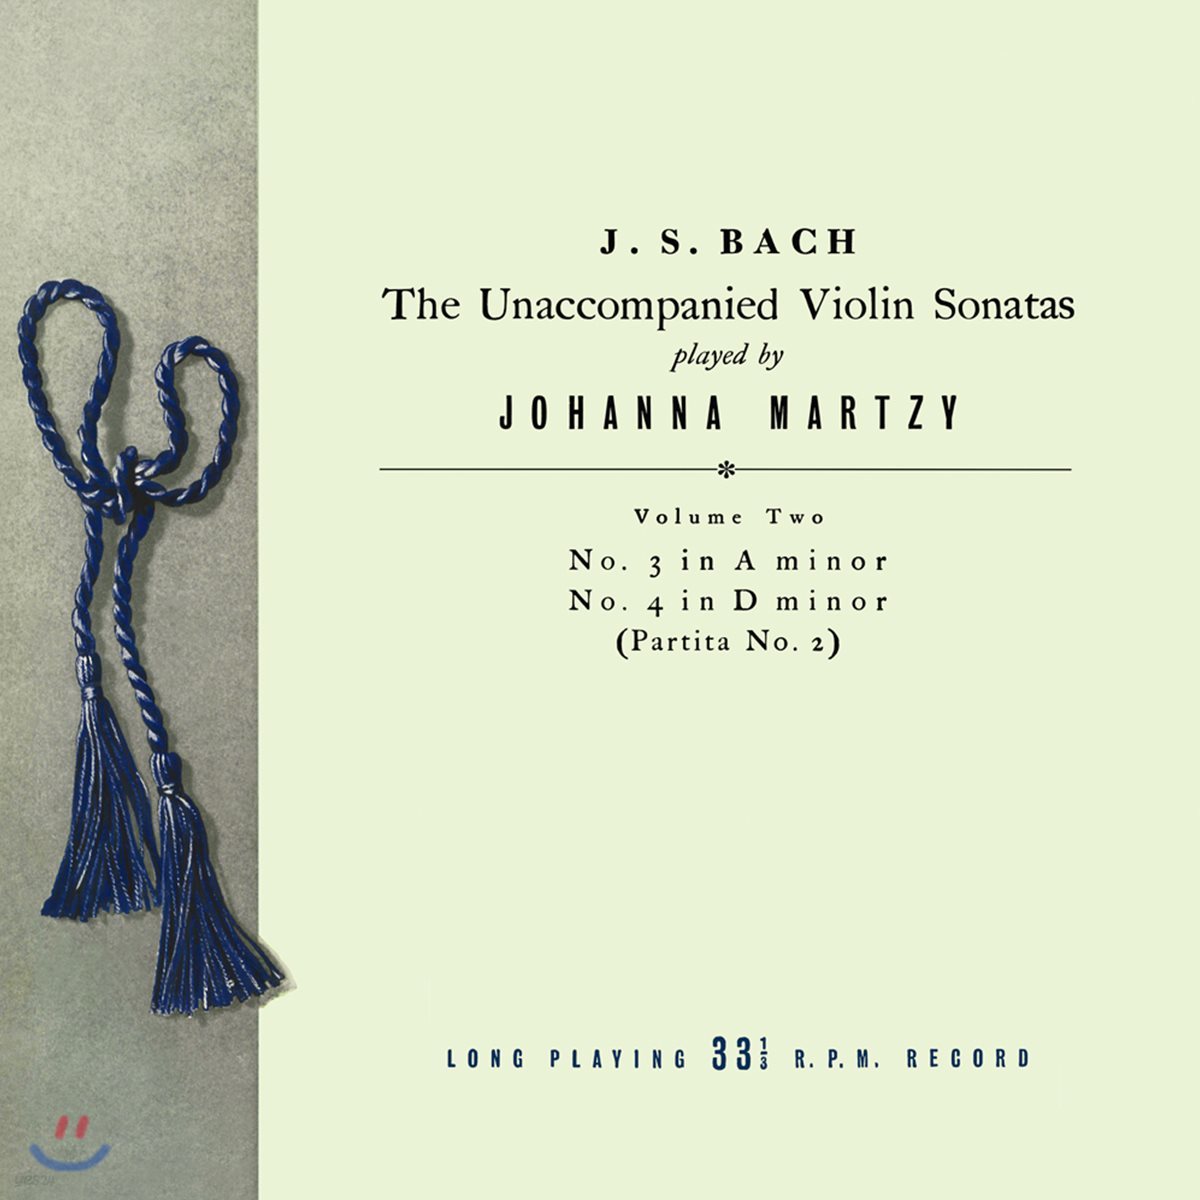 요한나 마르치 - 바흐: 무반주 바이올린 소나타 & 파르티타 2집 BWV1003 & 1004 (Johanna Martzy - J.S. Bach: The Unaccompanied Violin Sonatas Volume Two) [LP]